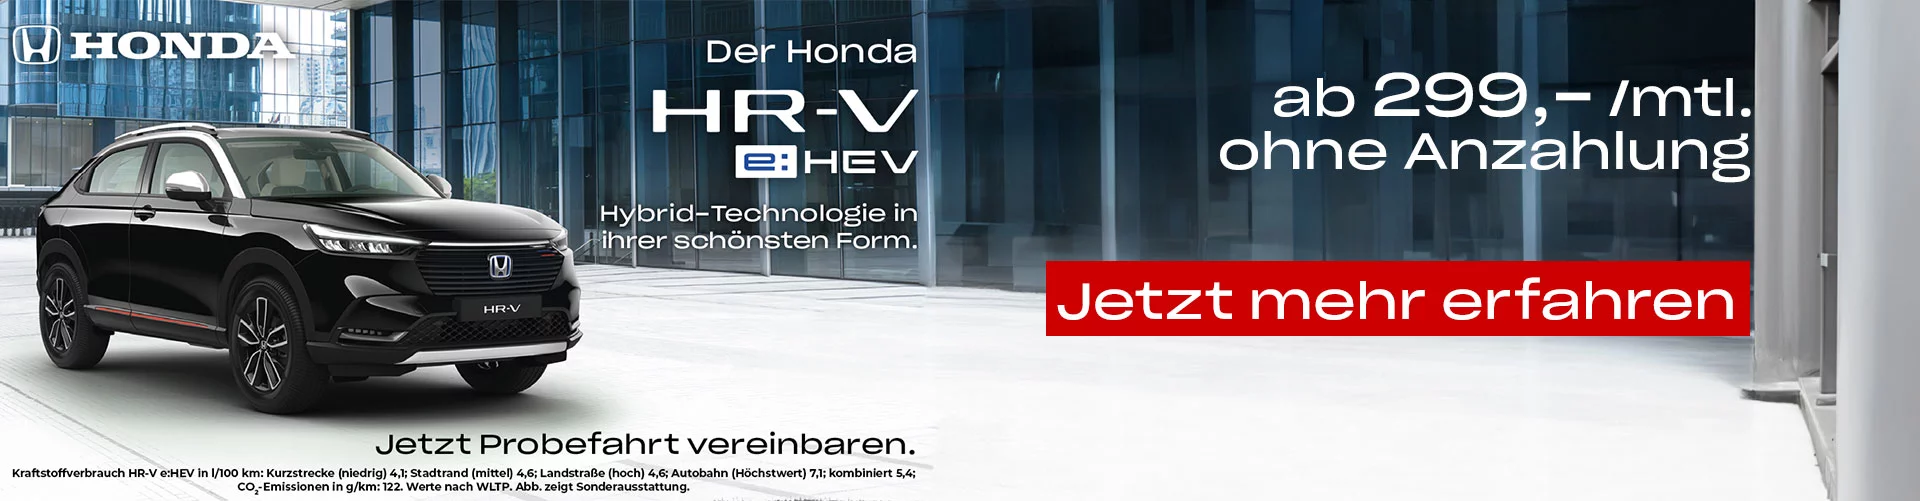 Honda HRV Hybrid NEU